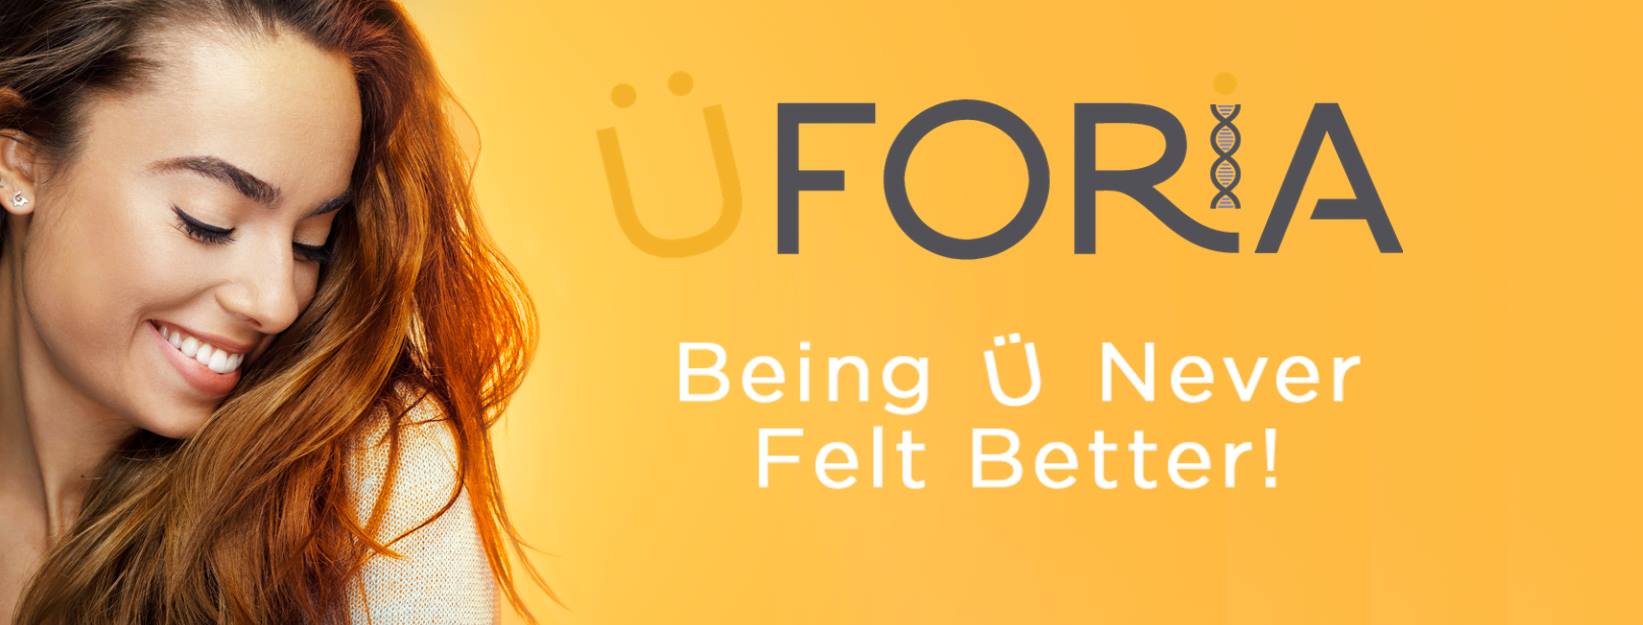 uforia banner